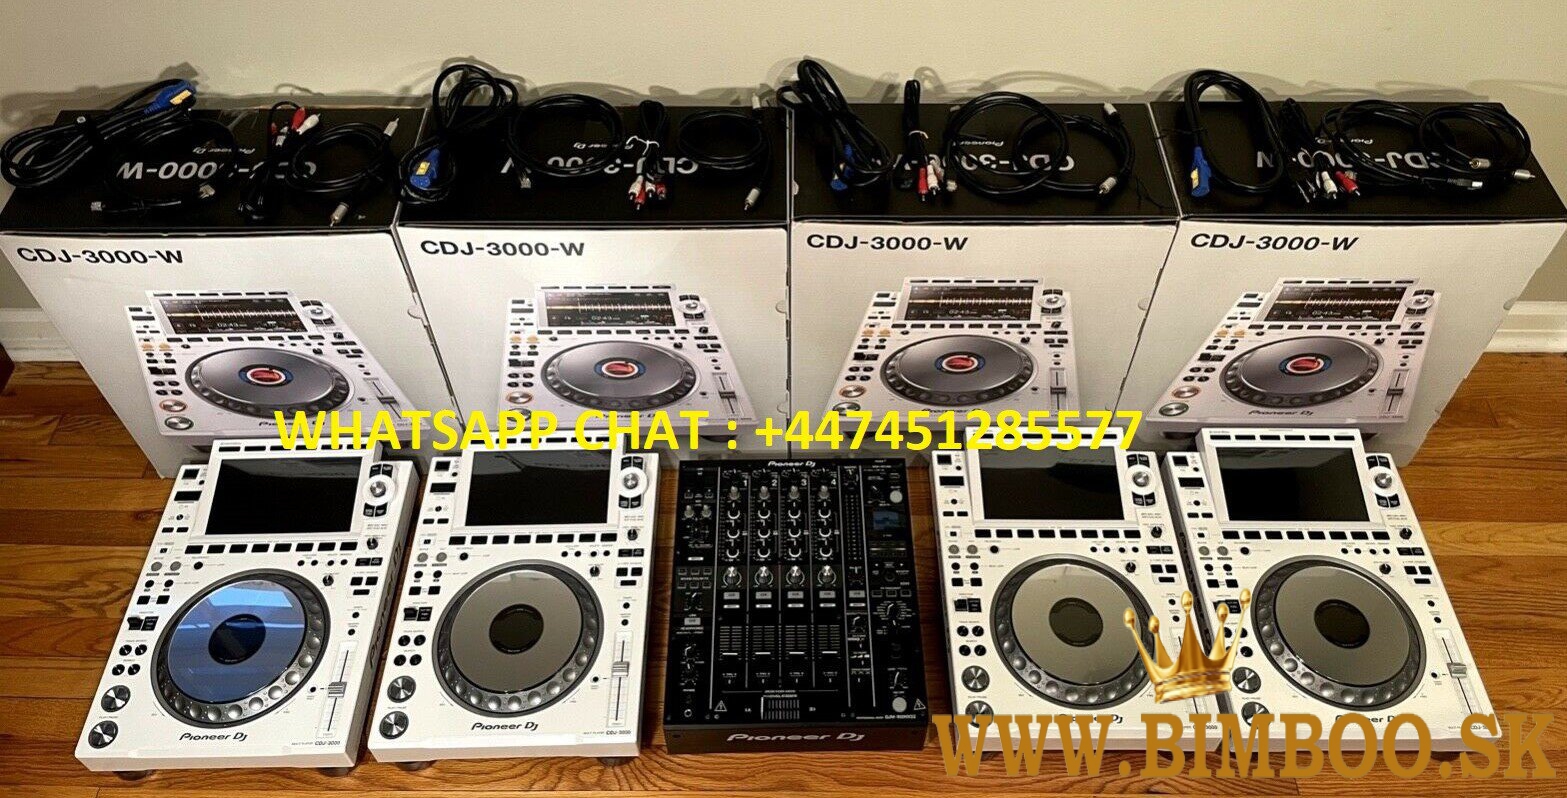 Pioneer DJ XDJ-RX3, Pioneer XDJ XZ, Pioneer DJ DDJ-REV7, Pioneer DDJ 1000, Pioneer DDJ 1000SRT,  Pio